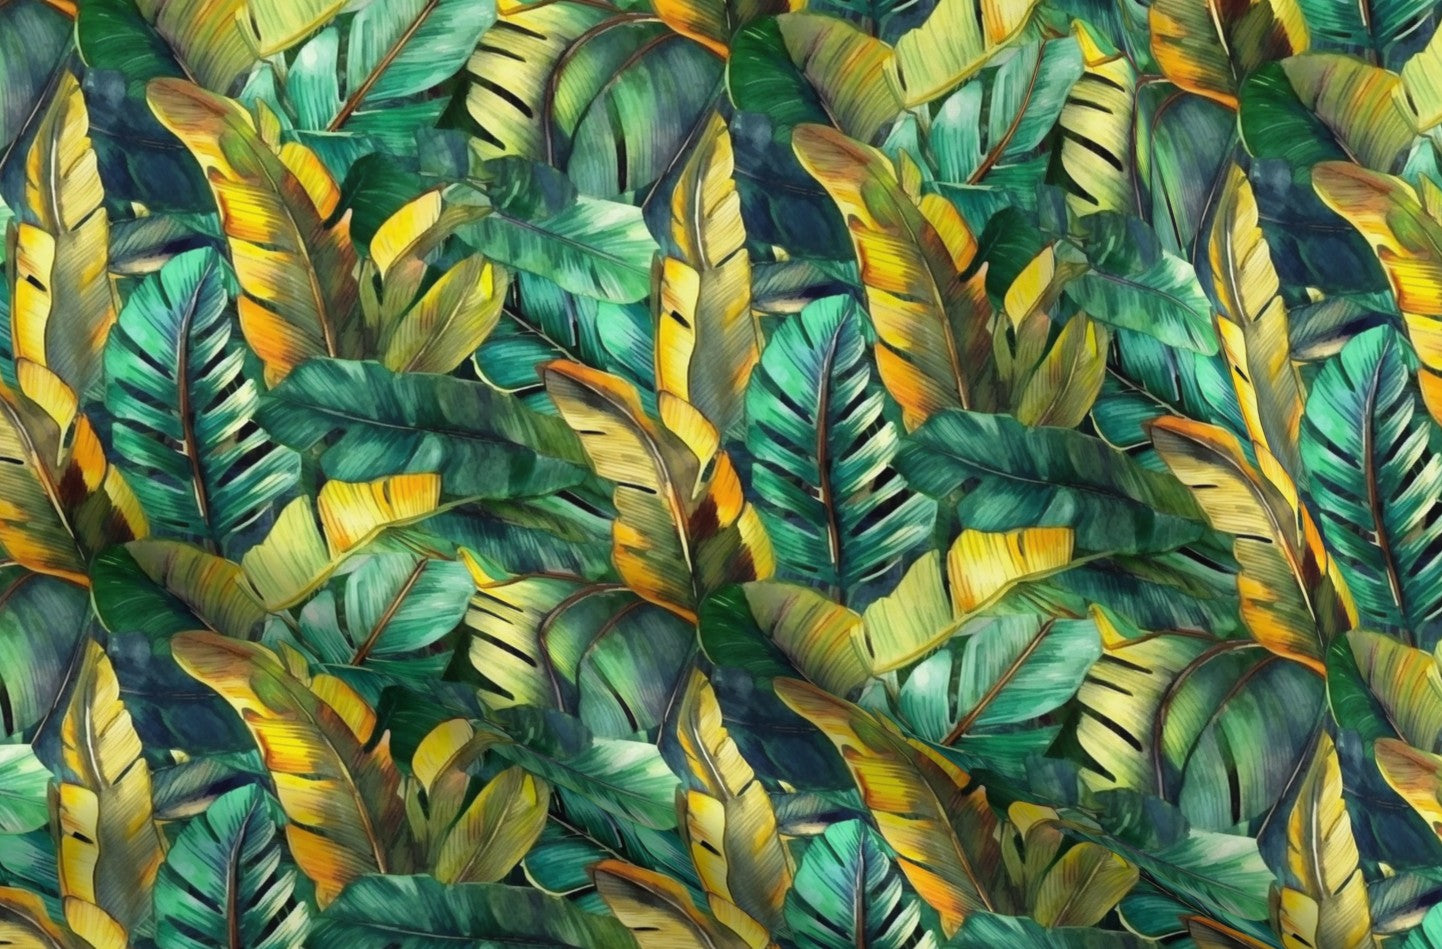 Watercolor Banana Leaves (Dark) Printed Fabric by Studio Ten Design